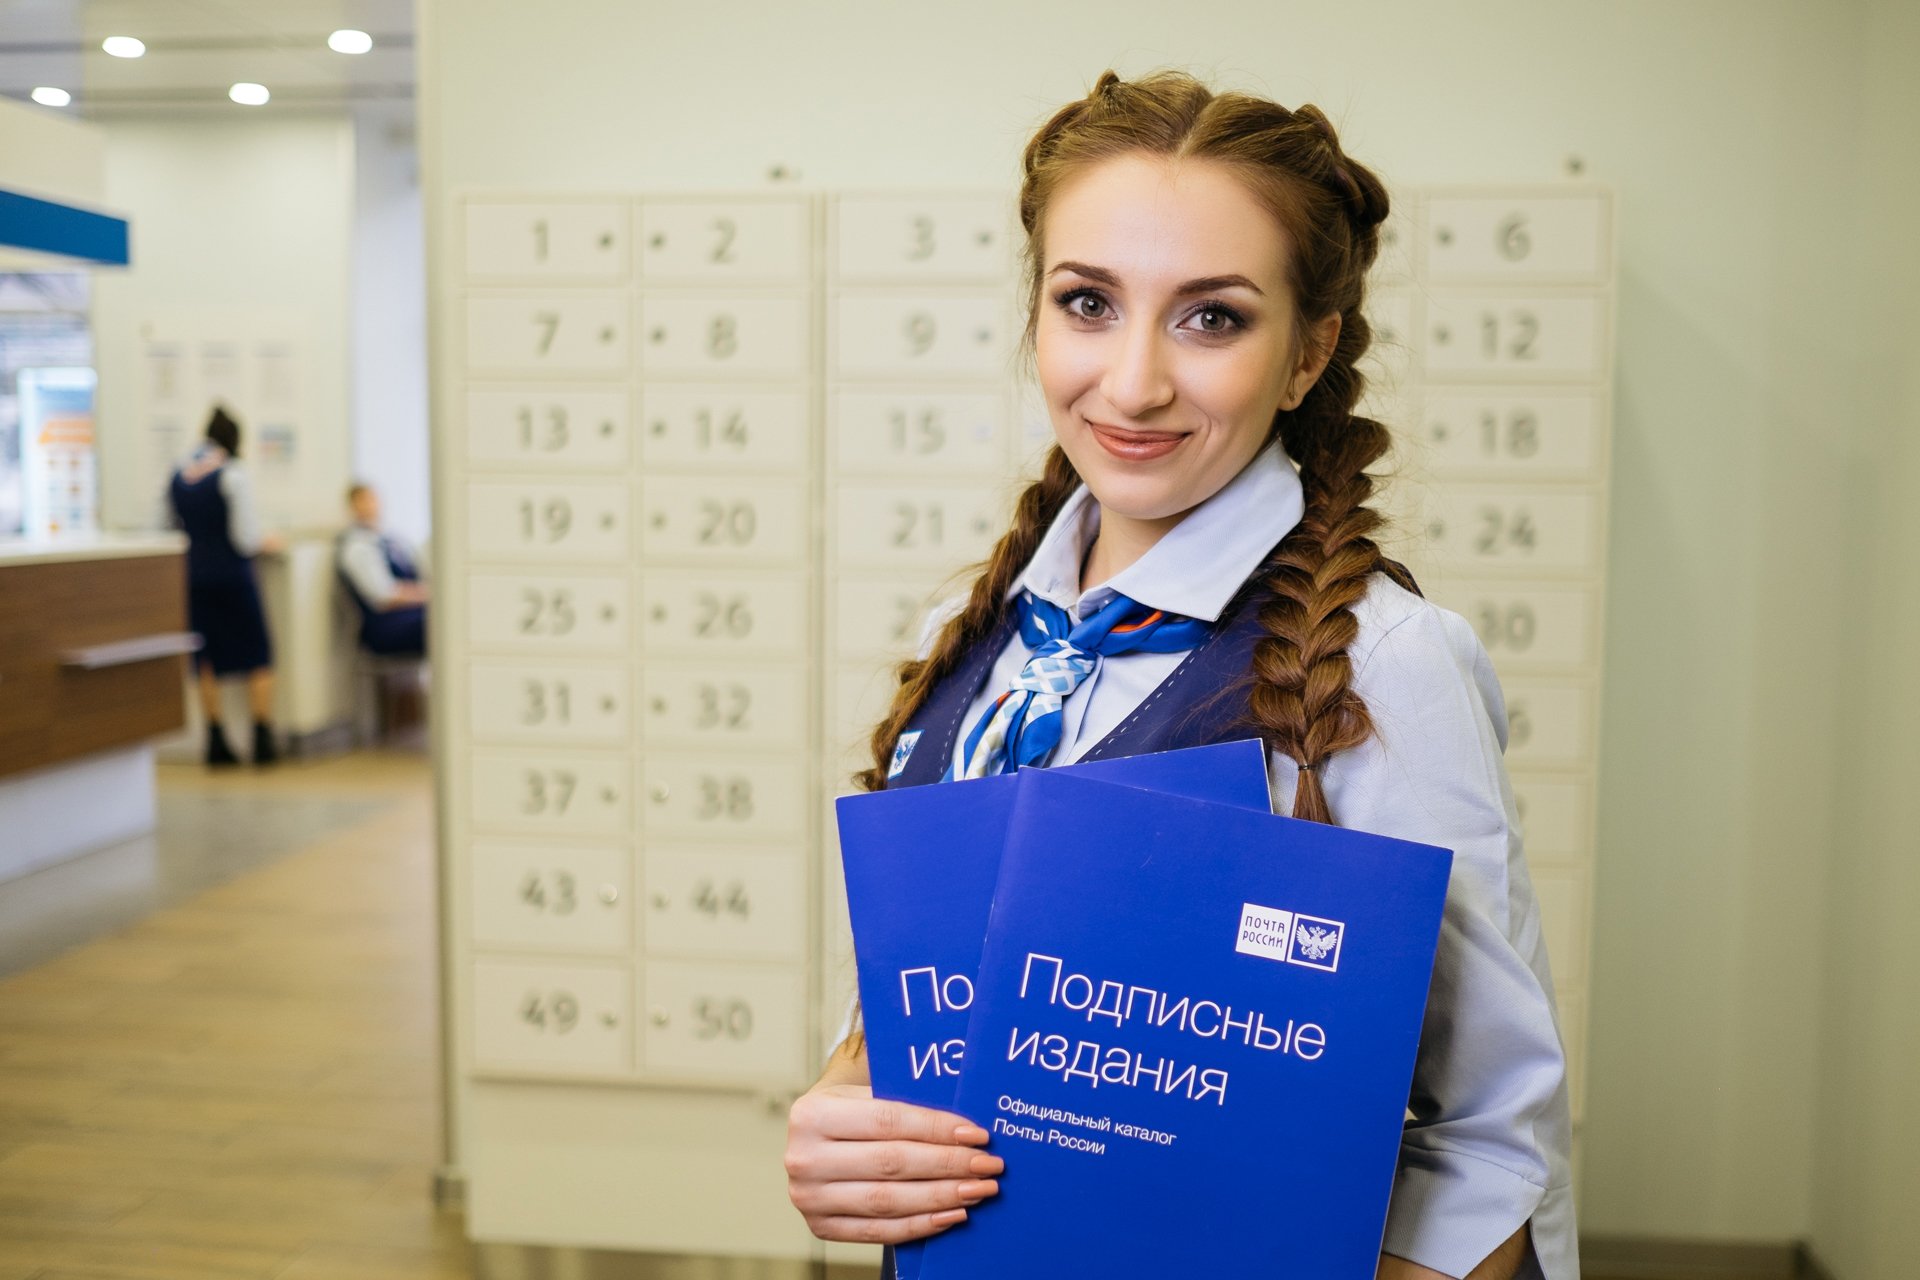 Жители Саратовской области могут оформить досрочную подписку на периодику на первое полугодие 2022 года по текущим ценам